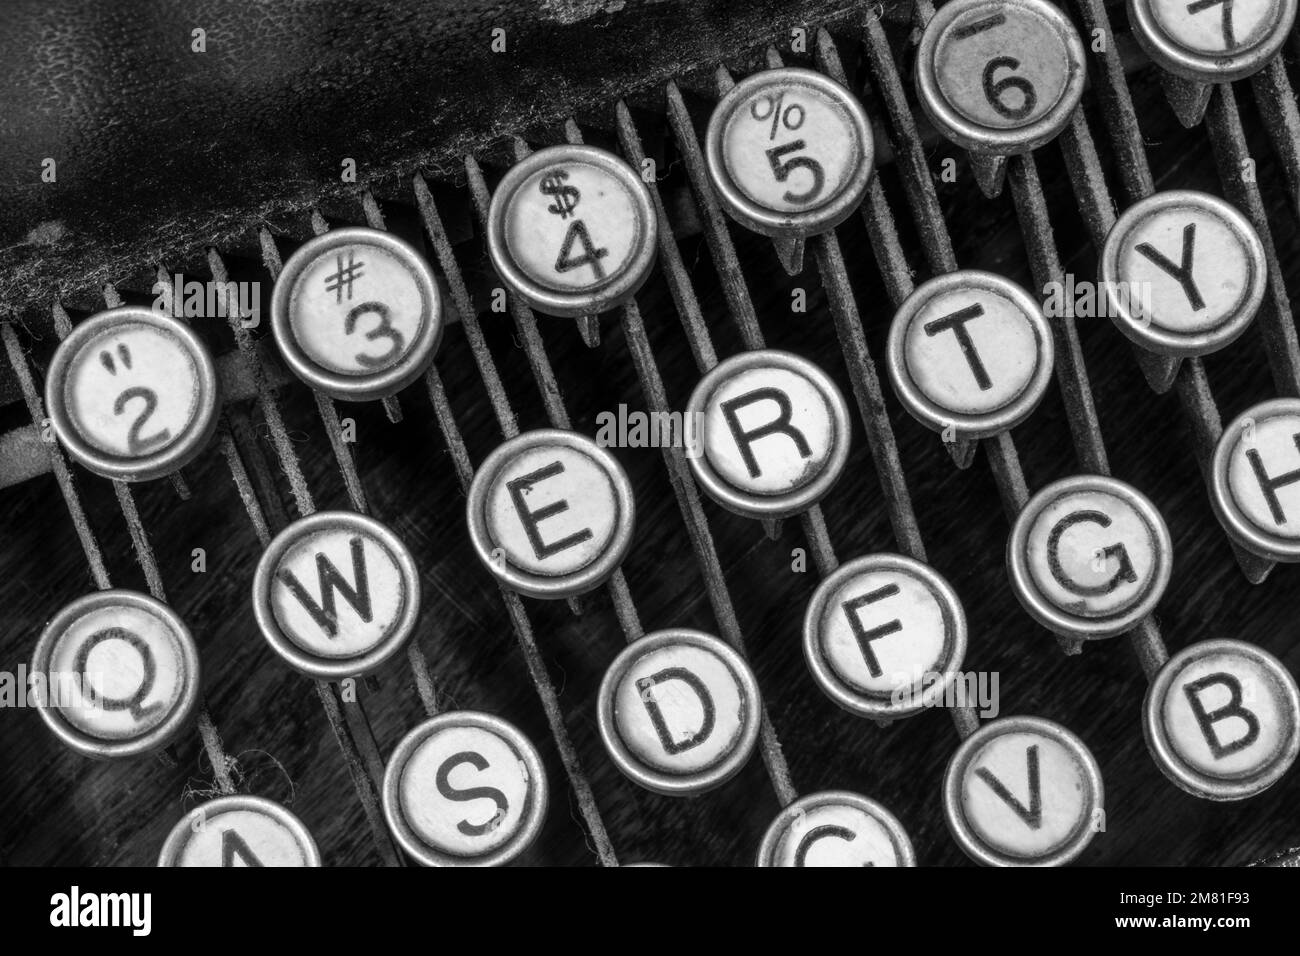 Antike Schreibmaschine mit traditionellen QWERTY-Schlüsseln. Vor dem SMS-Nachrichten verwendeten die Menschen Schreibmaschinen, um durch Schreiben von Briefen zu kommunizieren. Stockfoto